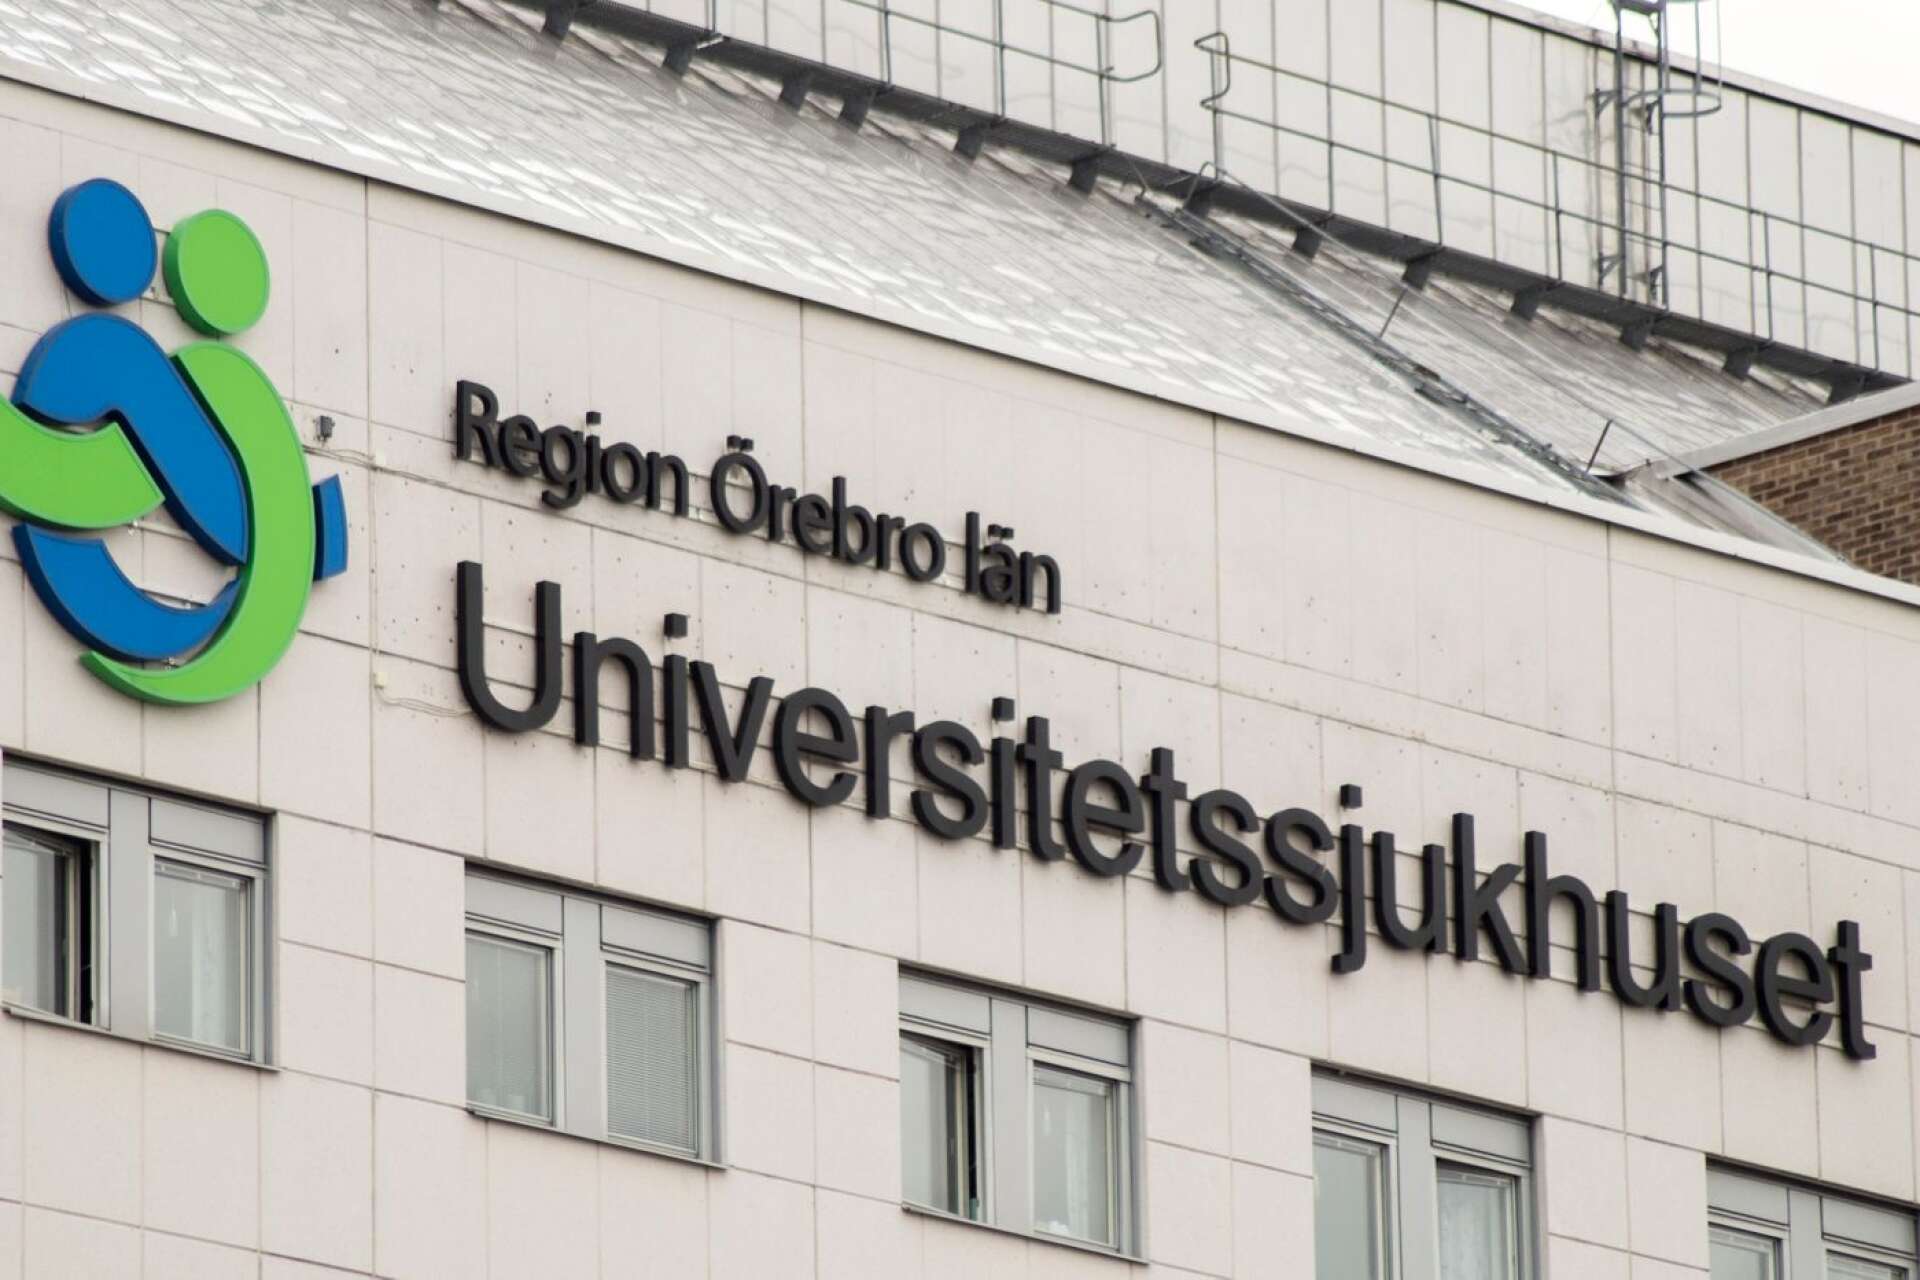 Region Örebro län ligger i framkant vad gäller den kliniska forskningen som bedrivs i regionen. 